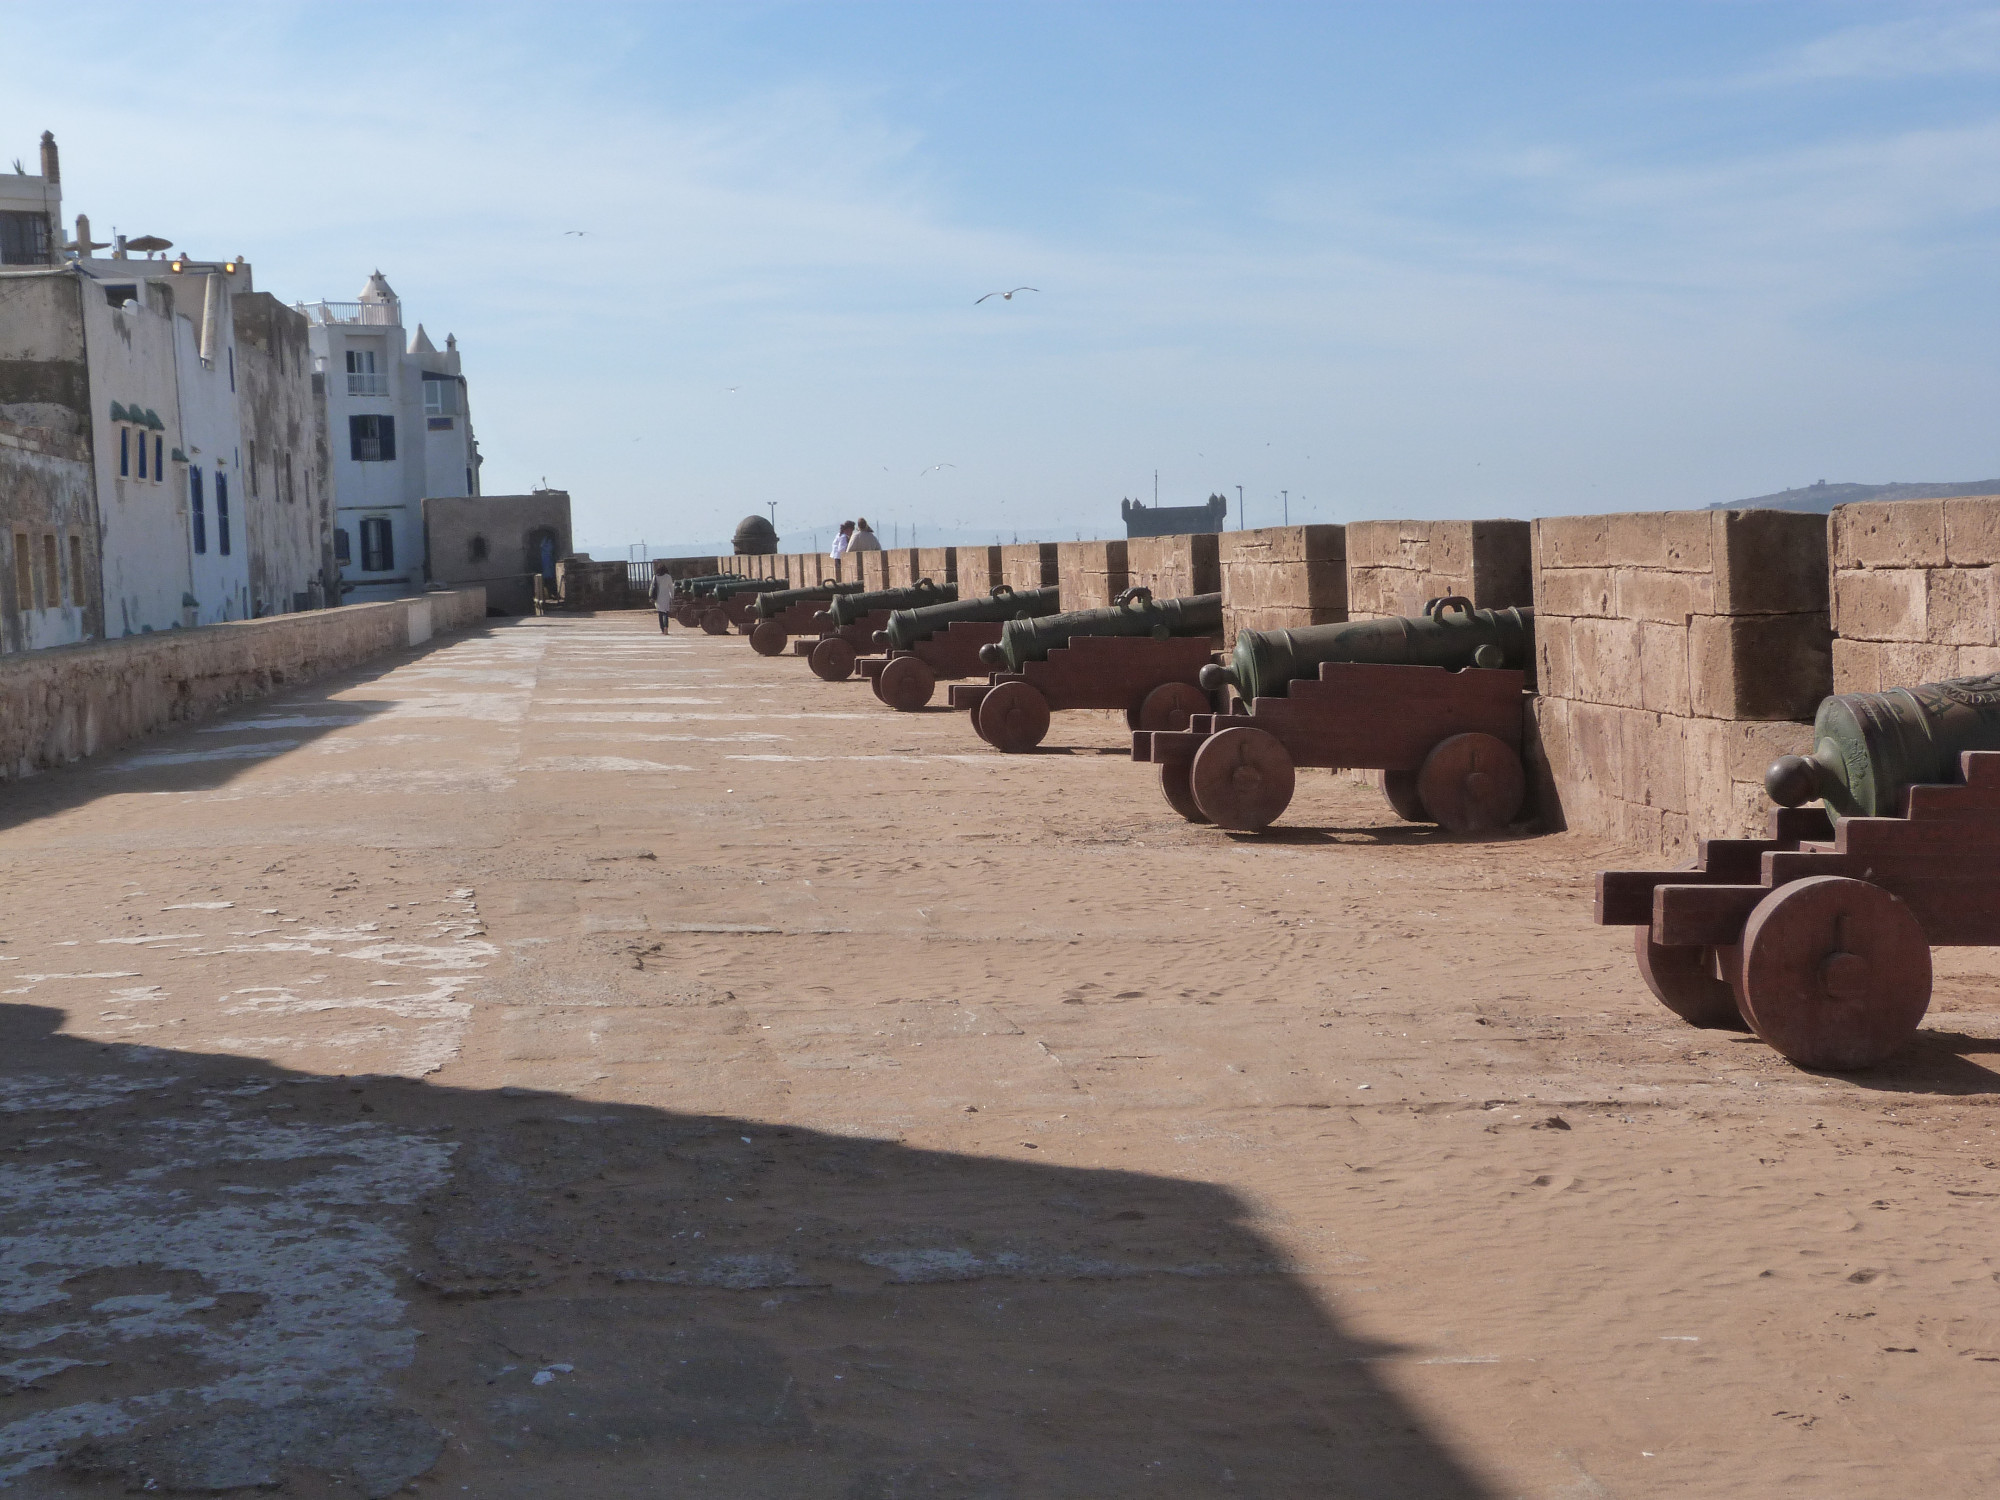 City walls, Essaouira, Morocco